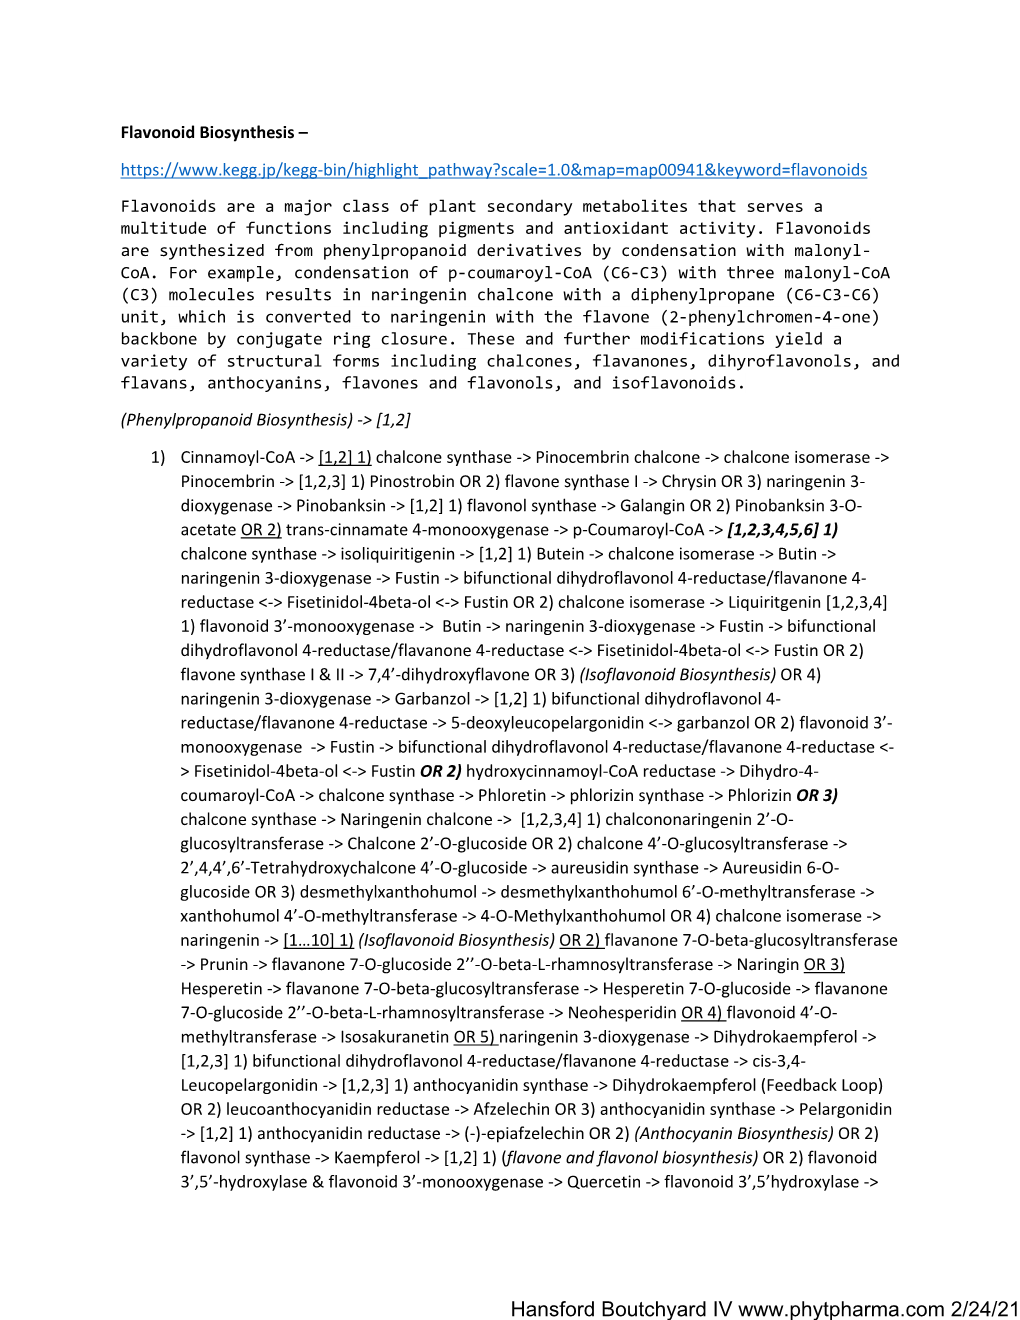 Flavonoid Biosynthesis 21221.Pdf